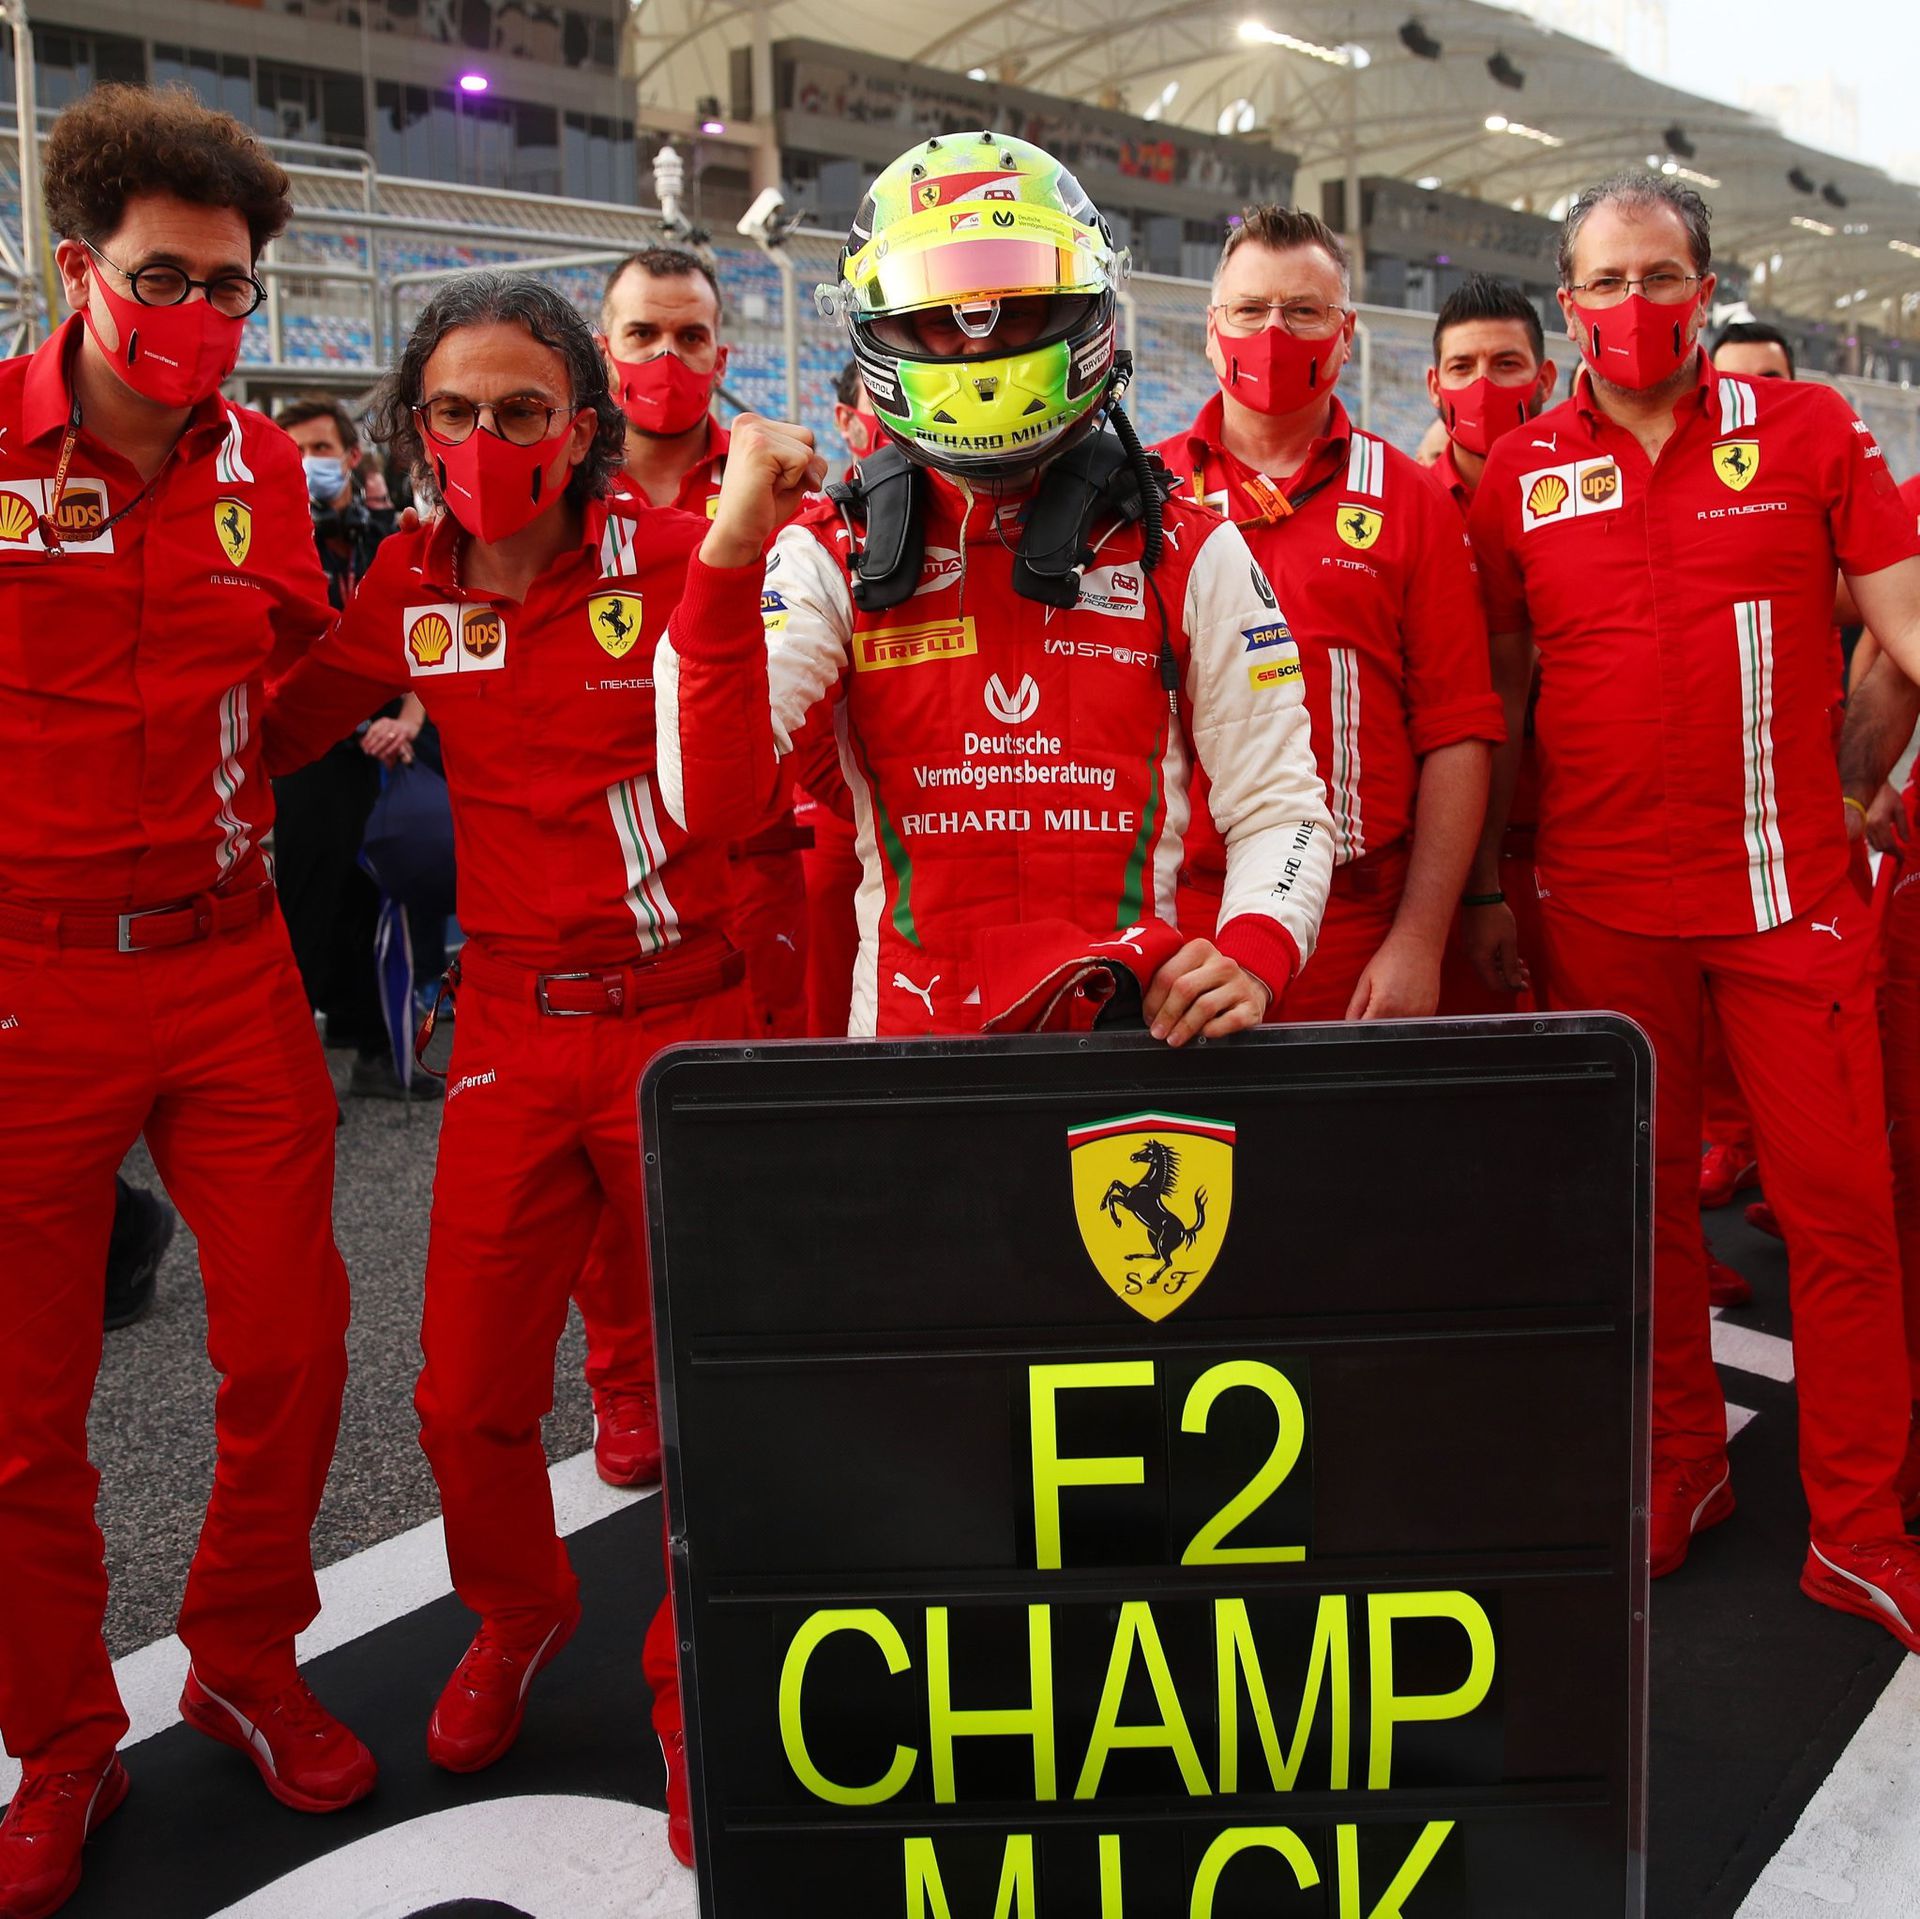 Mick Schumacher győzelmét a Forma–1-es Ferrari csapat tagjai is megünnepelték / Fotó: Facebook